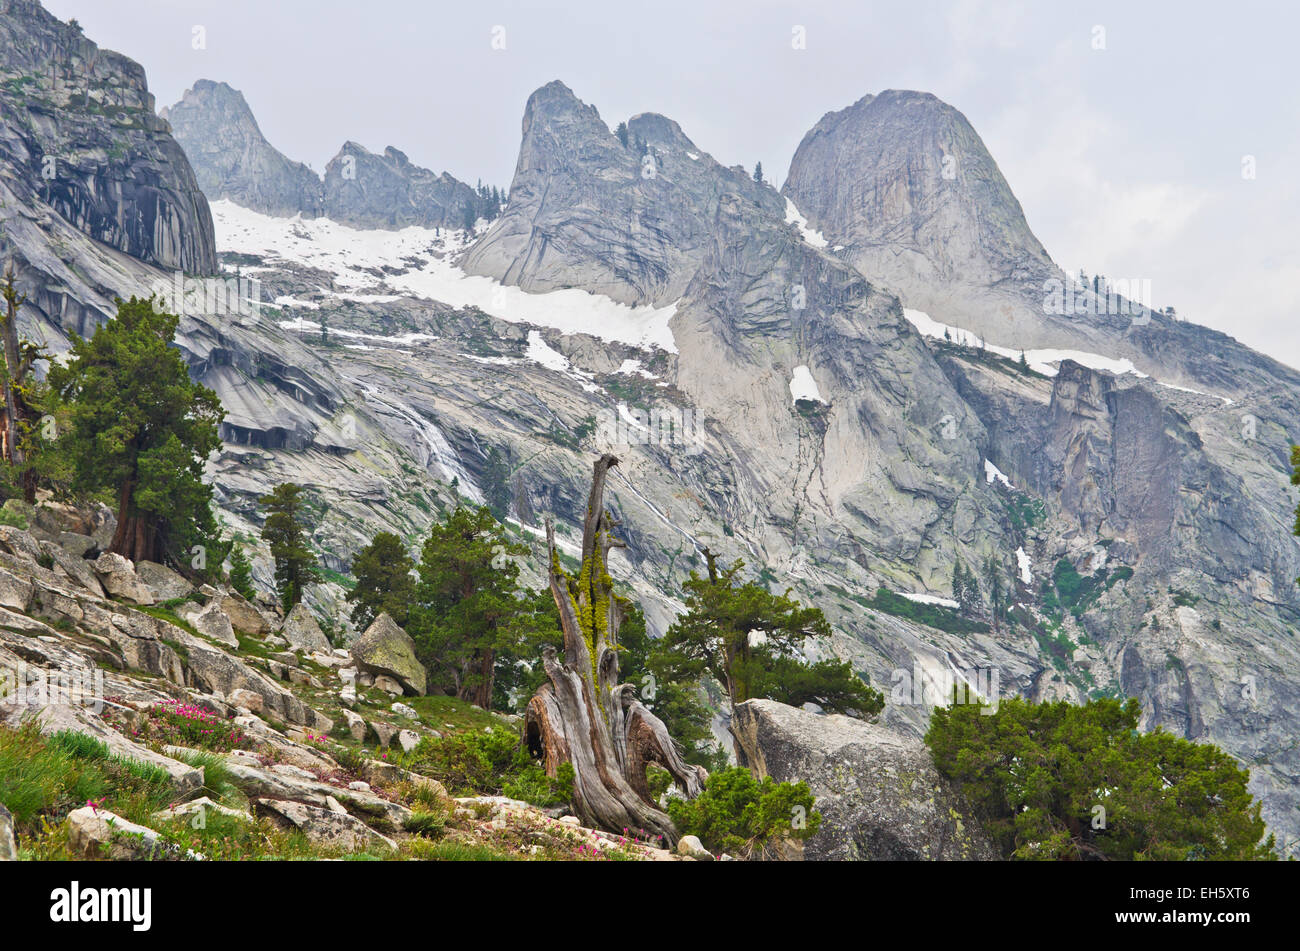 Afficher le long de la High Sierra Trail, près de Lake Hamilton, Sequoia National Park, California, United States. Banque D'Images